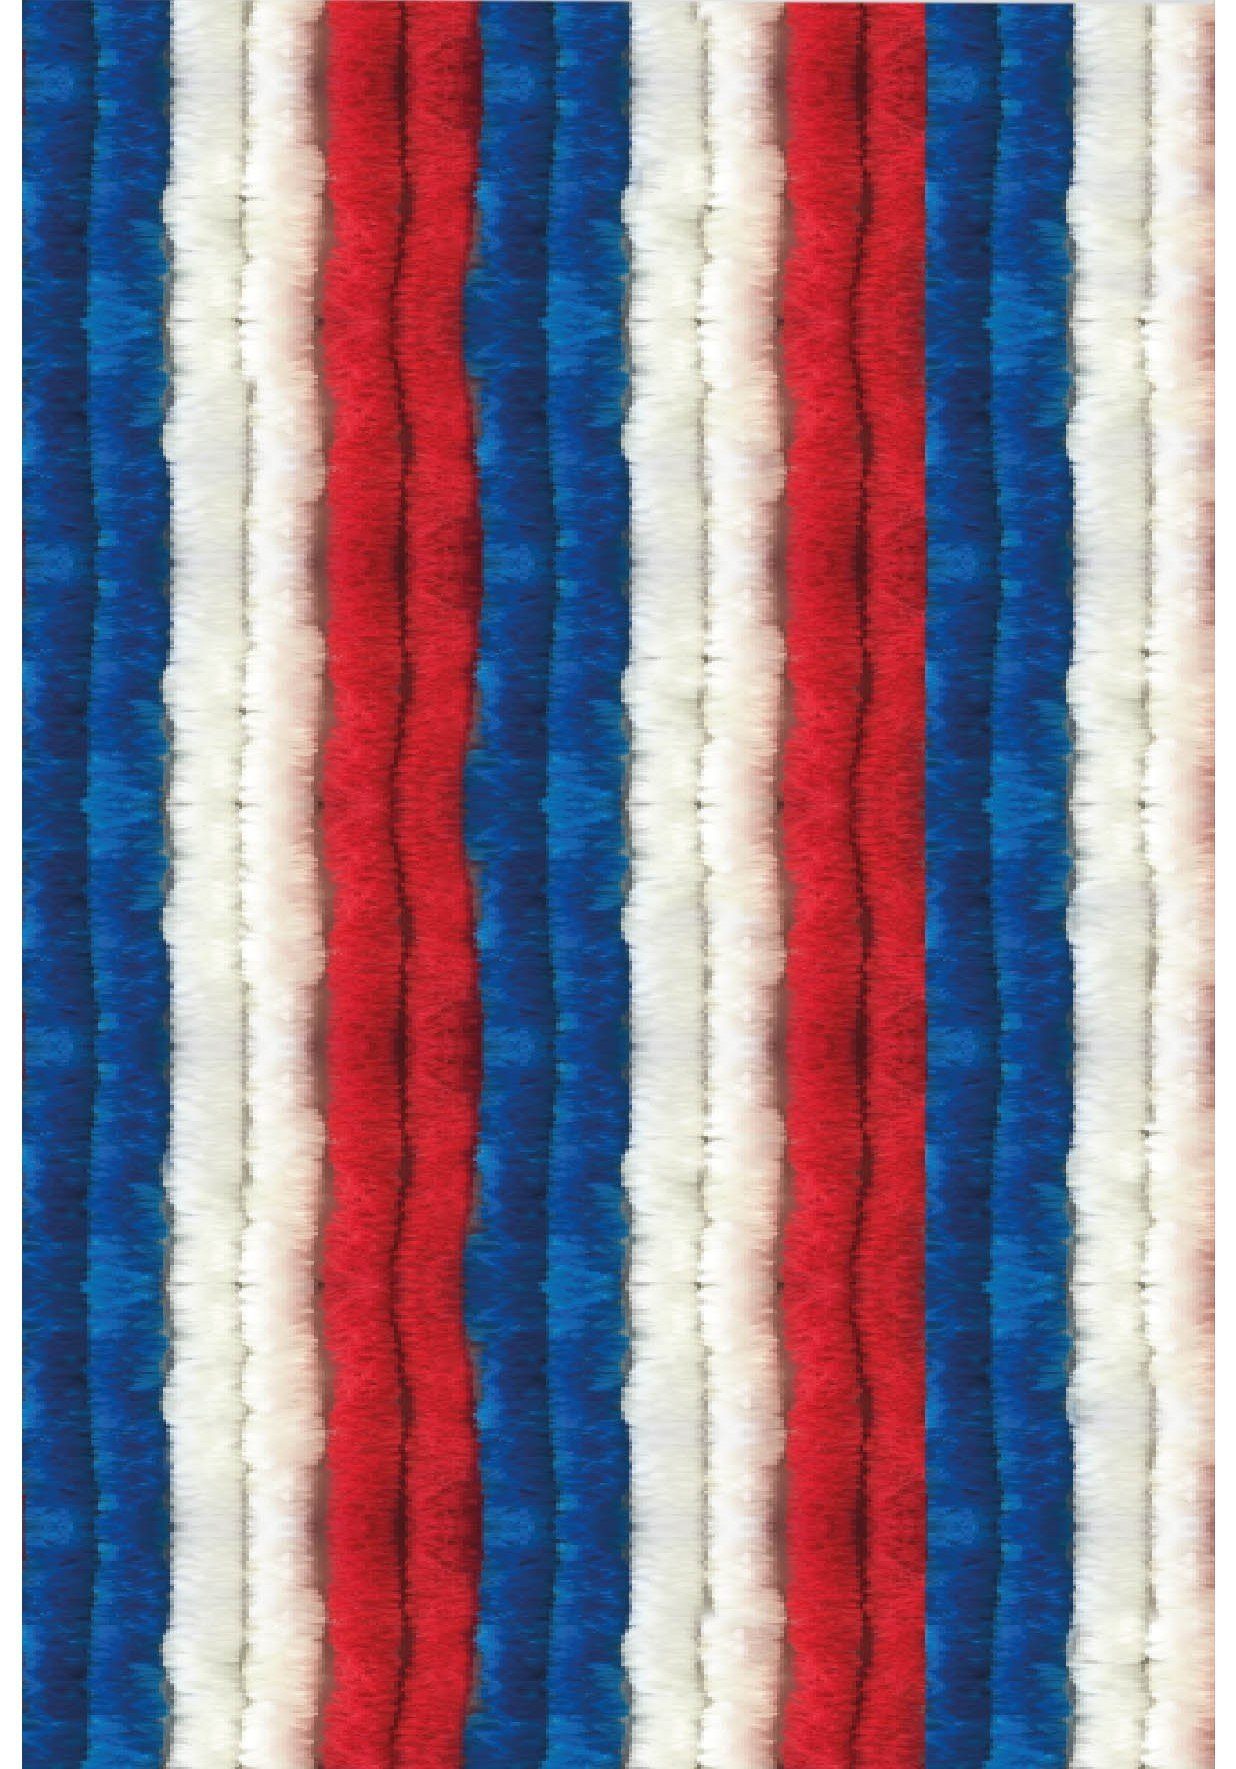 Türvorhang Flauschi, Arsvita, Ösen (1 St), Flauschvorhang 160x185 cm in Unistreifen rot - weiß - blau, viele Farben Rot-Weiß-Blau